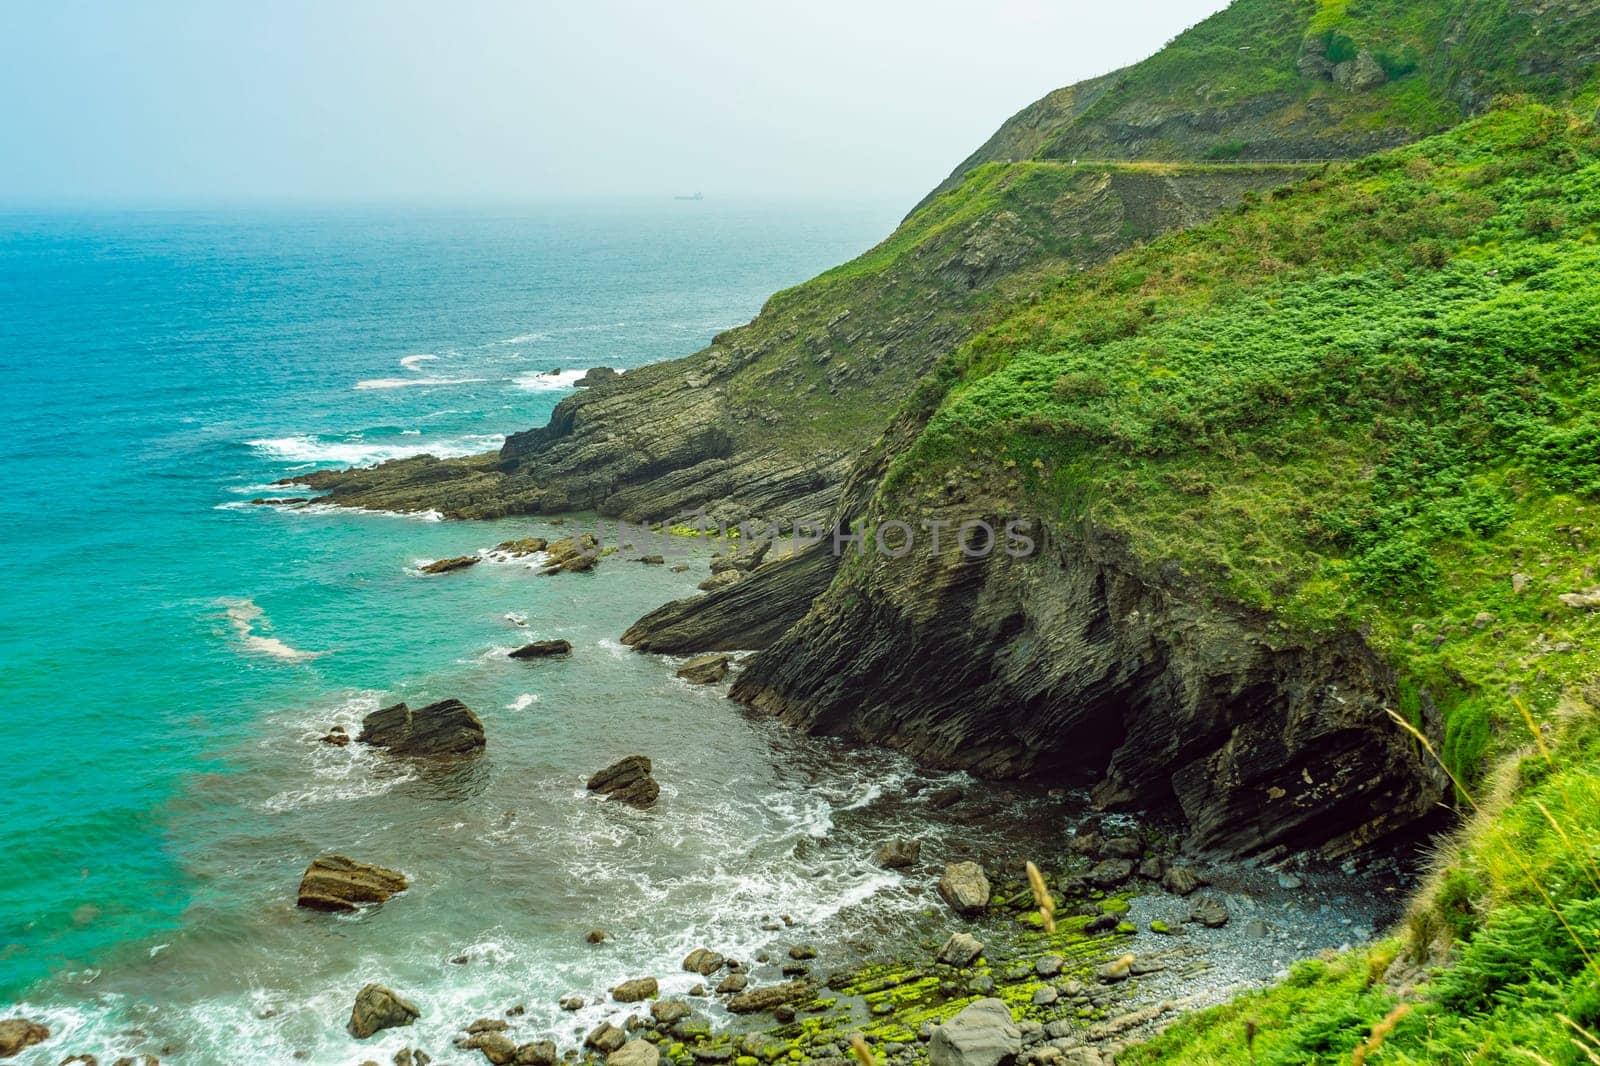 rocky shore with green vegetation. Atlantic coast in Spain, Basque Country. Camino de Santiago by paca-waca